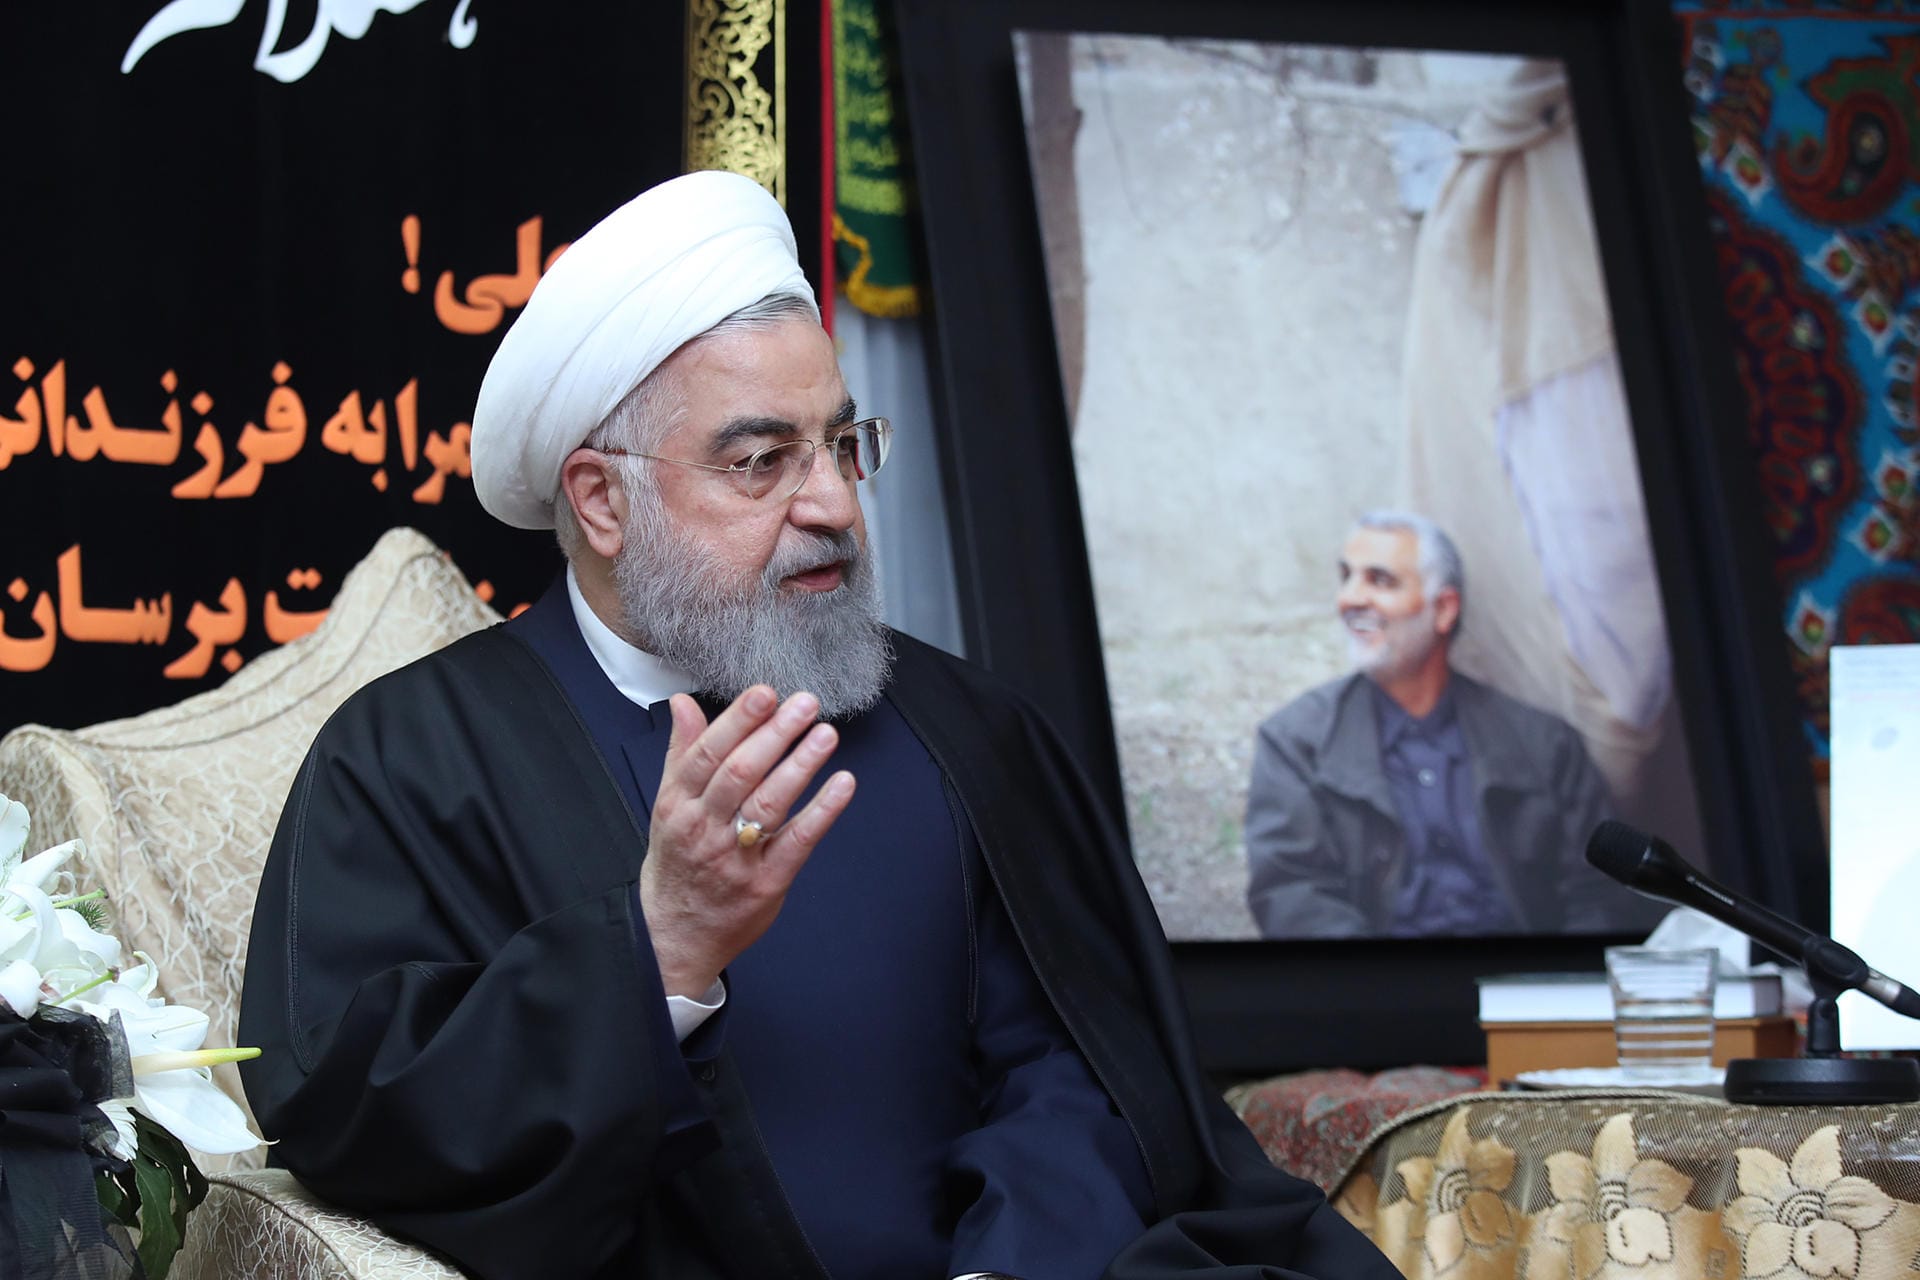 3. Januar 2020: Irans Präsident Hassan Ruhani neben einem Bild von Soleimani. Der Oberste Nationale Sicherheitsrat des Iran droht den USA "schwere Vergeltung am richtigen Ort zur richtigen Zeit" an. Der "kriminelle" Angriff auf General Soleimani sei "der größte Fehler", den die USA in der Region begangen hätten".